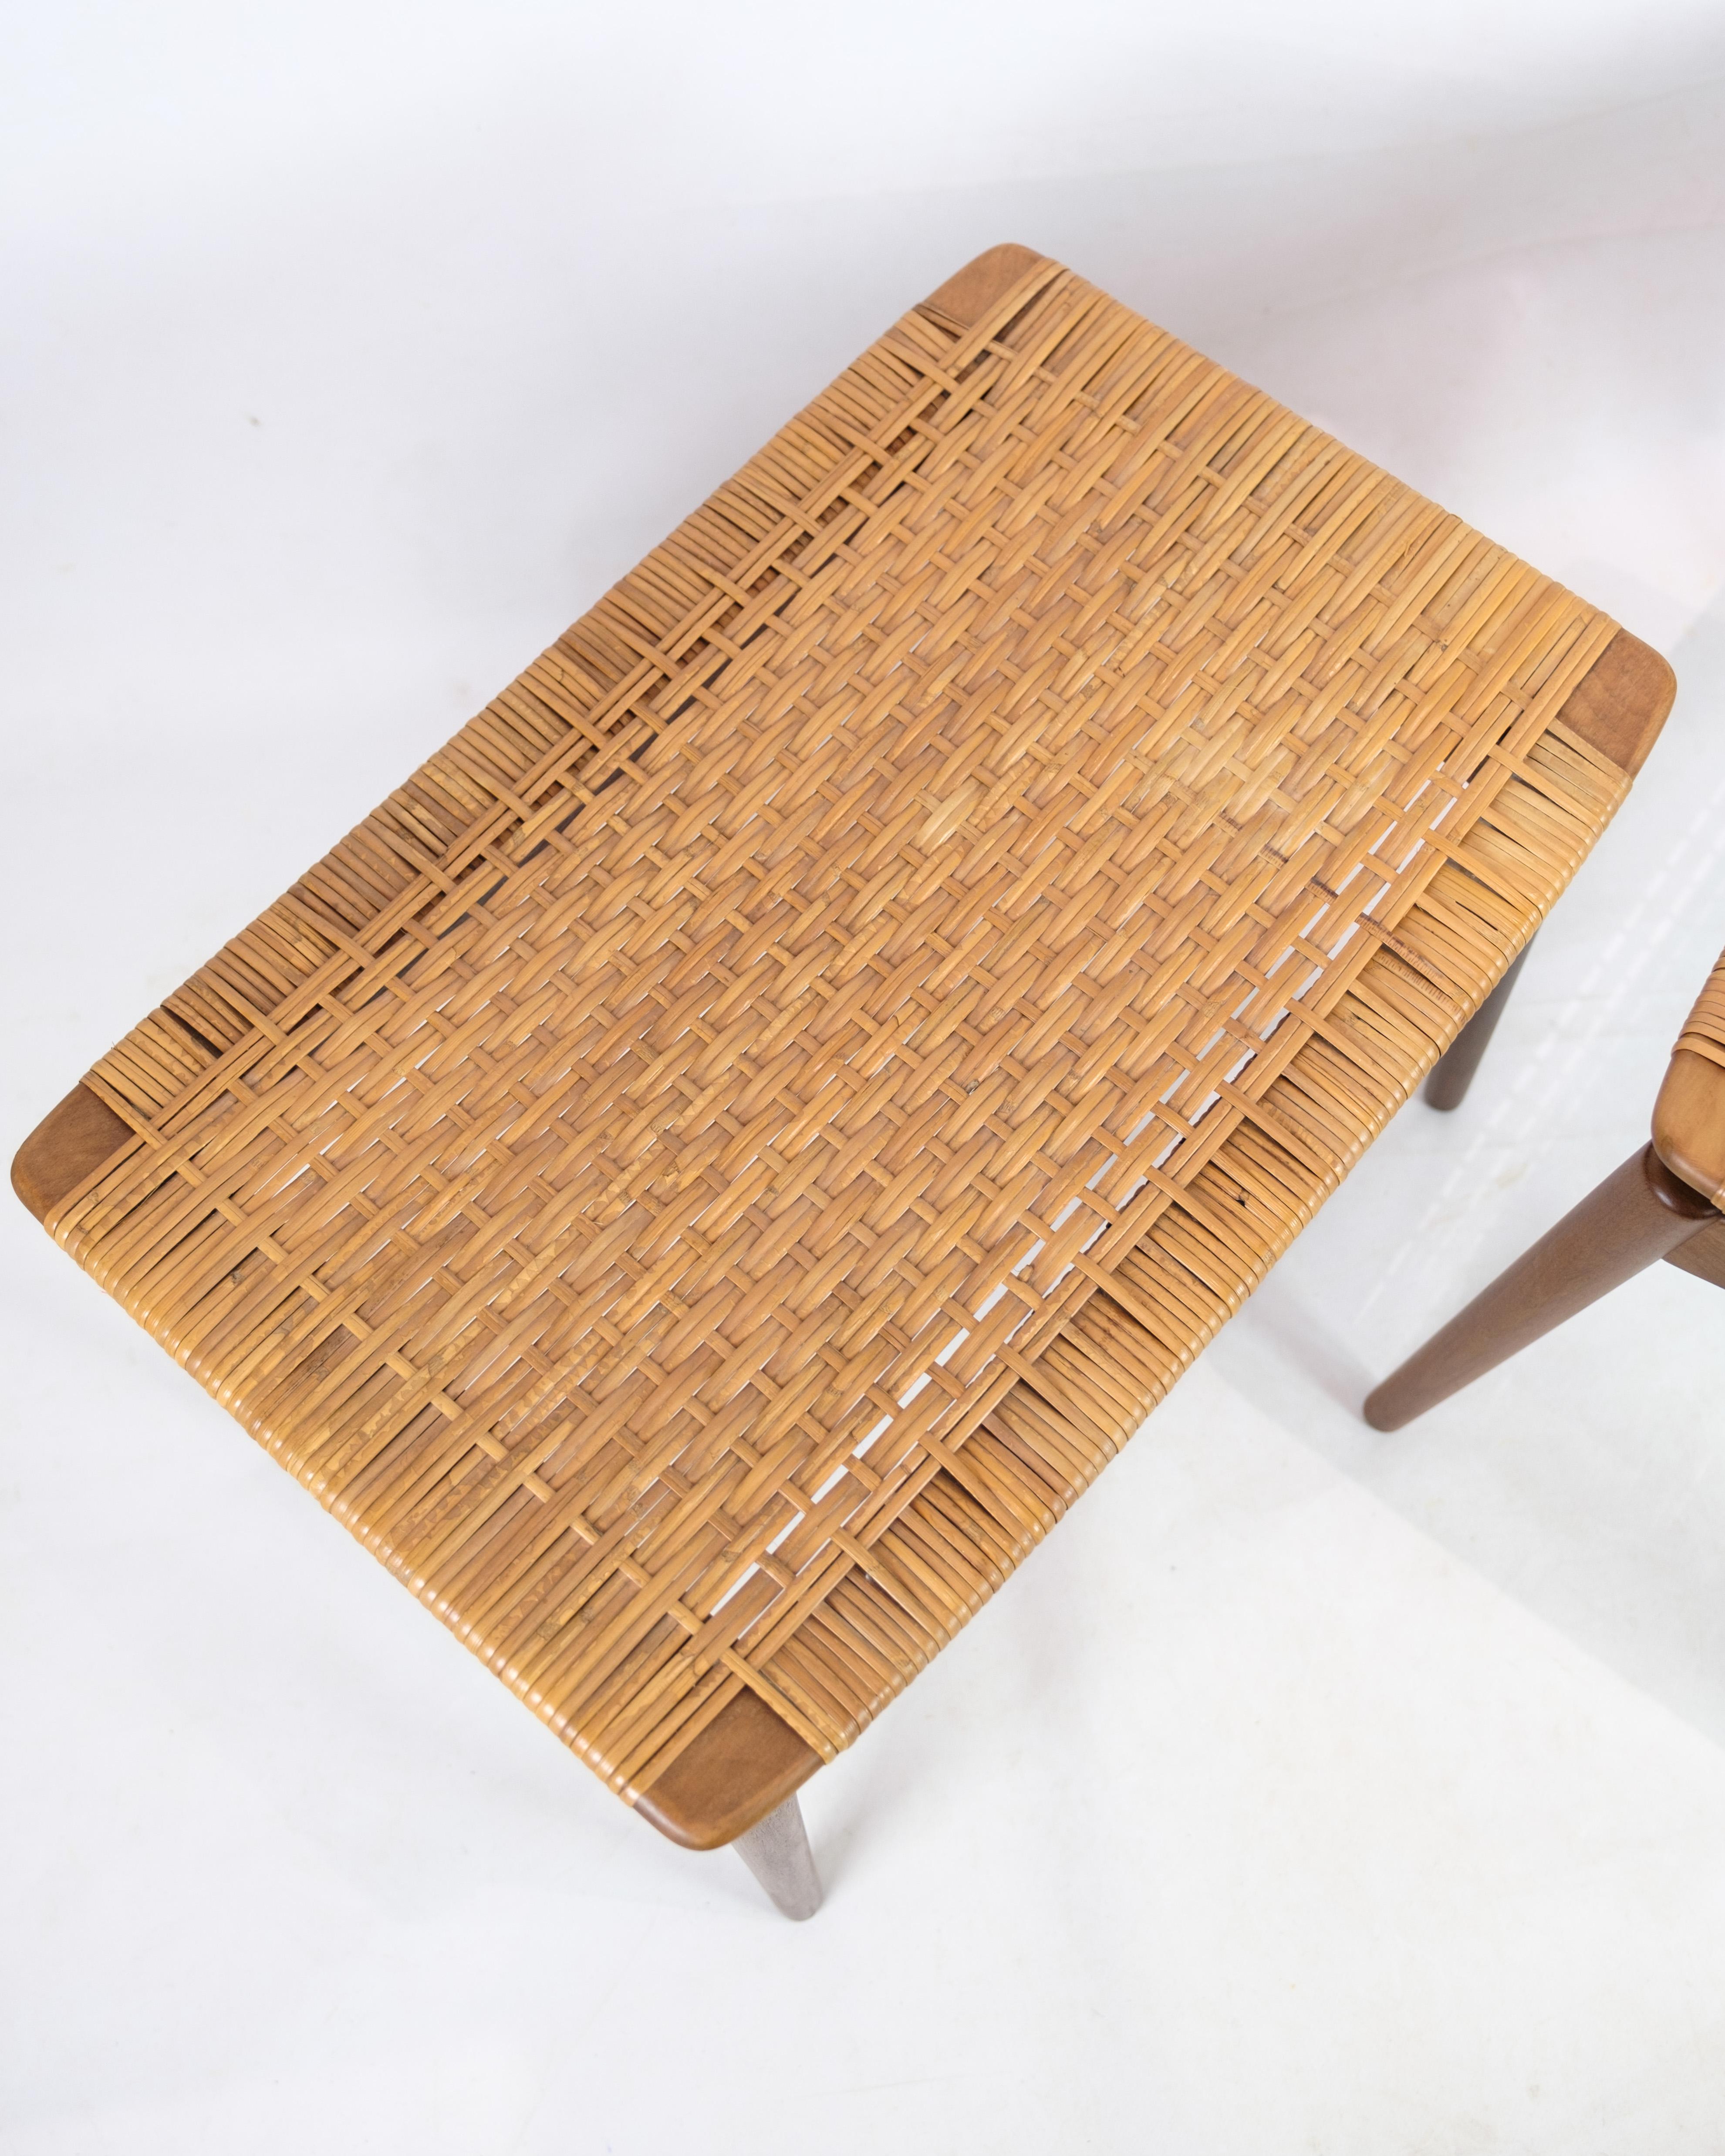 Ce tabouret en teck conçu par Sigfred One pour Ølholm Møbelfabrik vers les années 1960 est un bel exemple de mobilier danois de la période moderne du milieu du siècle.

Sigfred Omann était un célèbre designer de meubles danois, connu pour ses